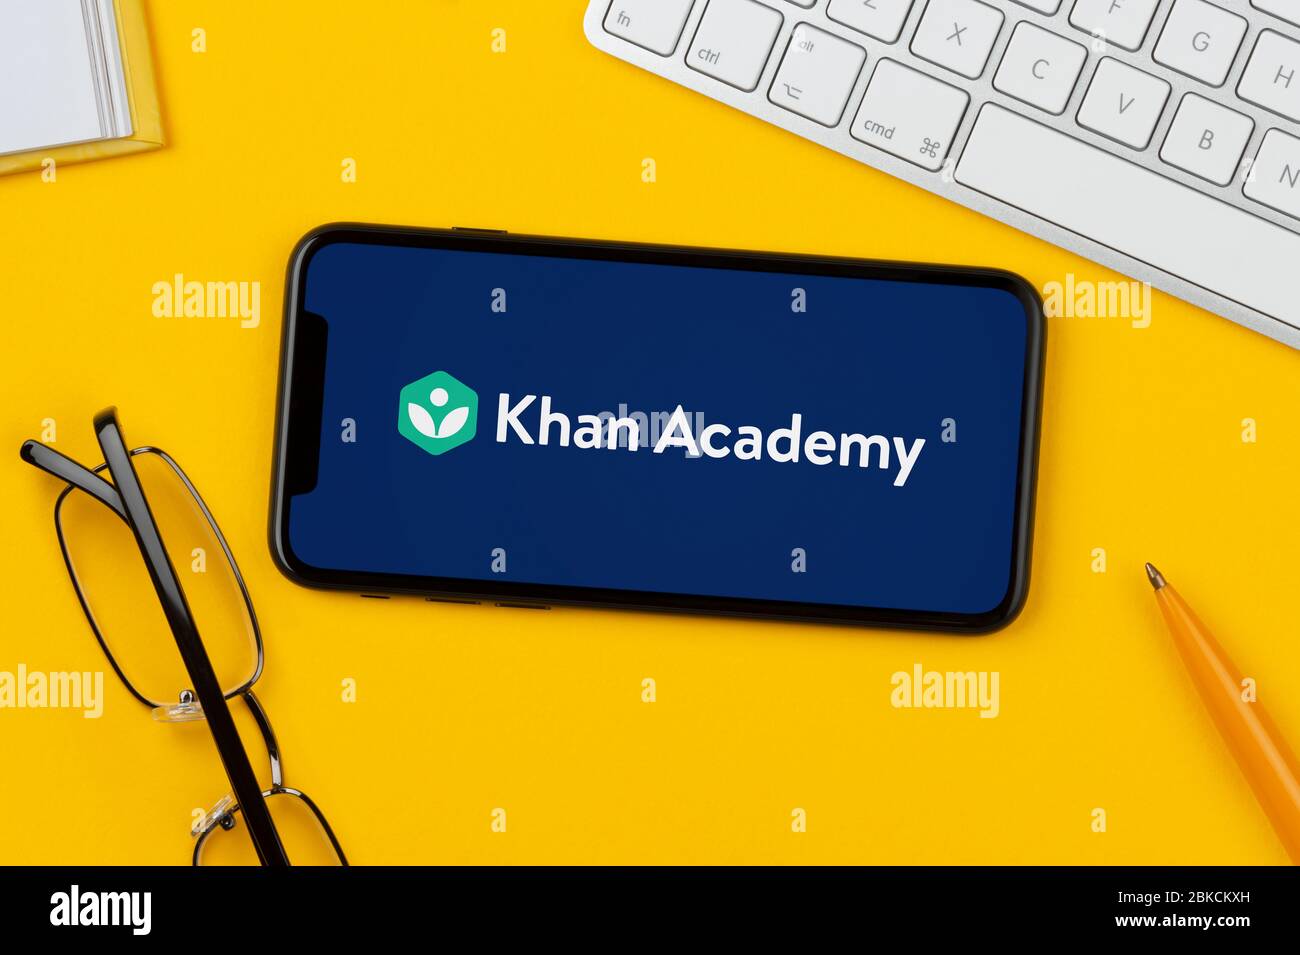 Un smartphone que muestra el logotipo de Khan Academy se apoya sobre un fondo amarillo junto con un teclado, gafas, lápiz y libro (sólo para uso editorial). Foto de stock